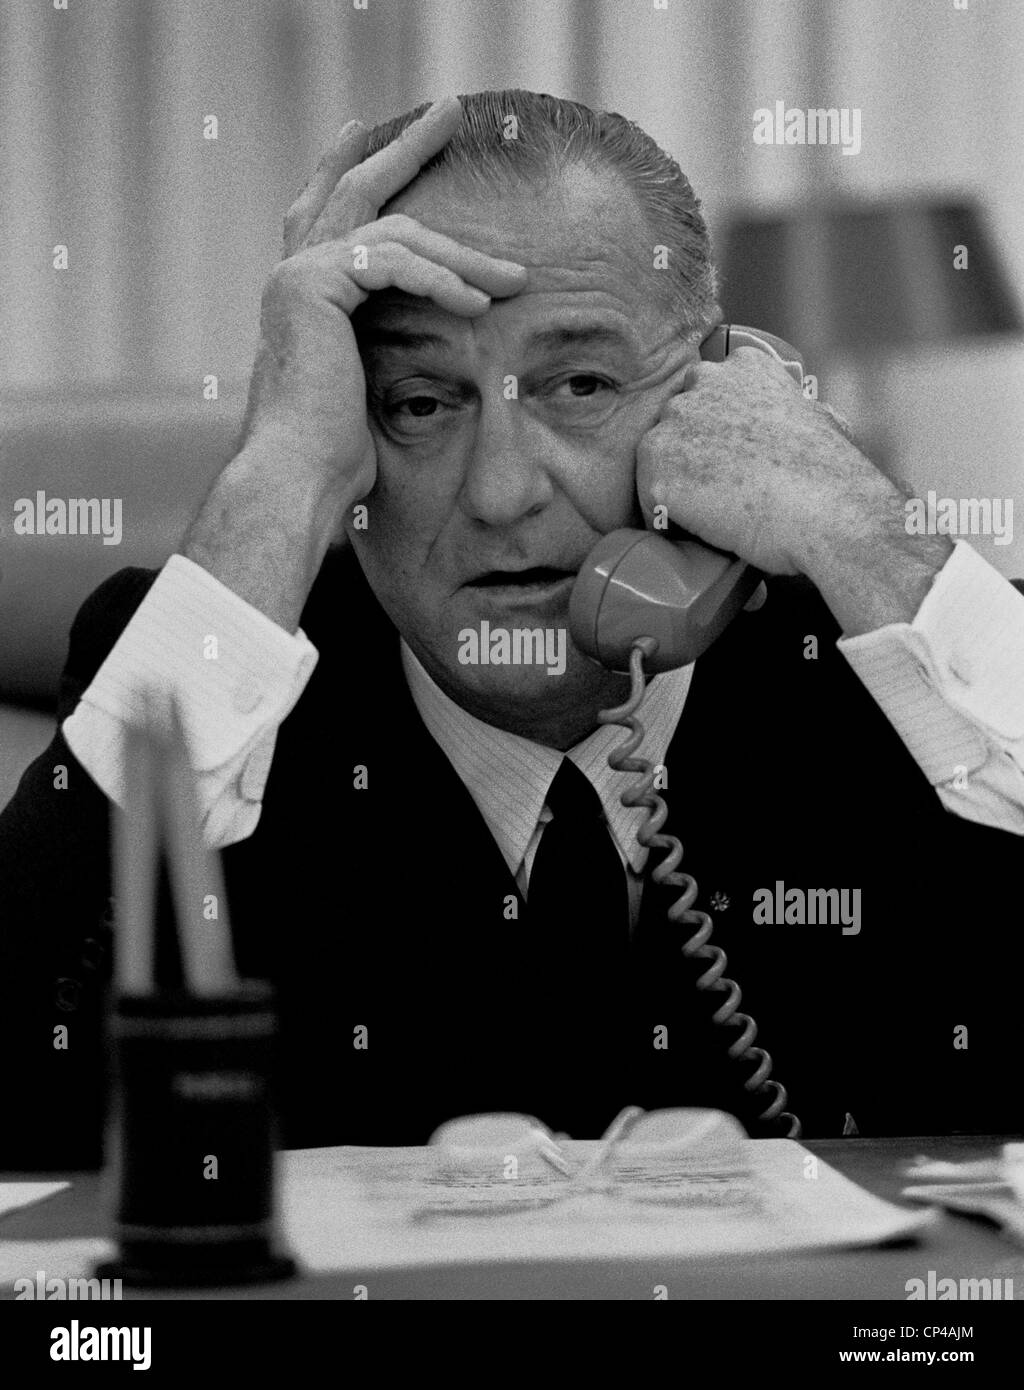 Präsident Lyndon Johnson am Telefon im Weißen Haus. 17. Juli 1965. Stockfoto